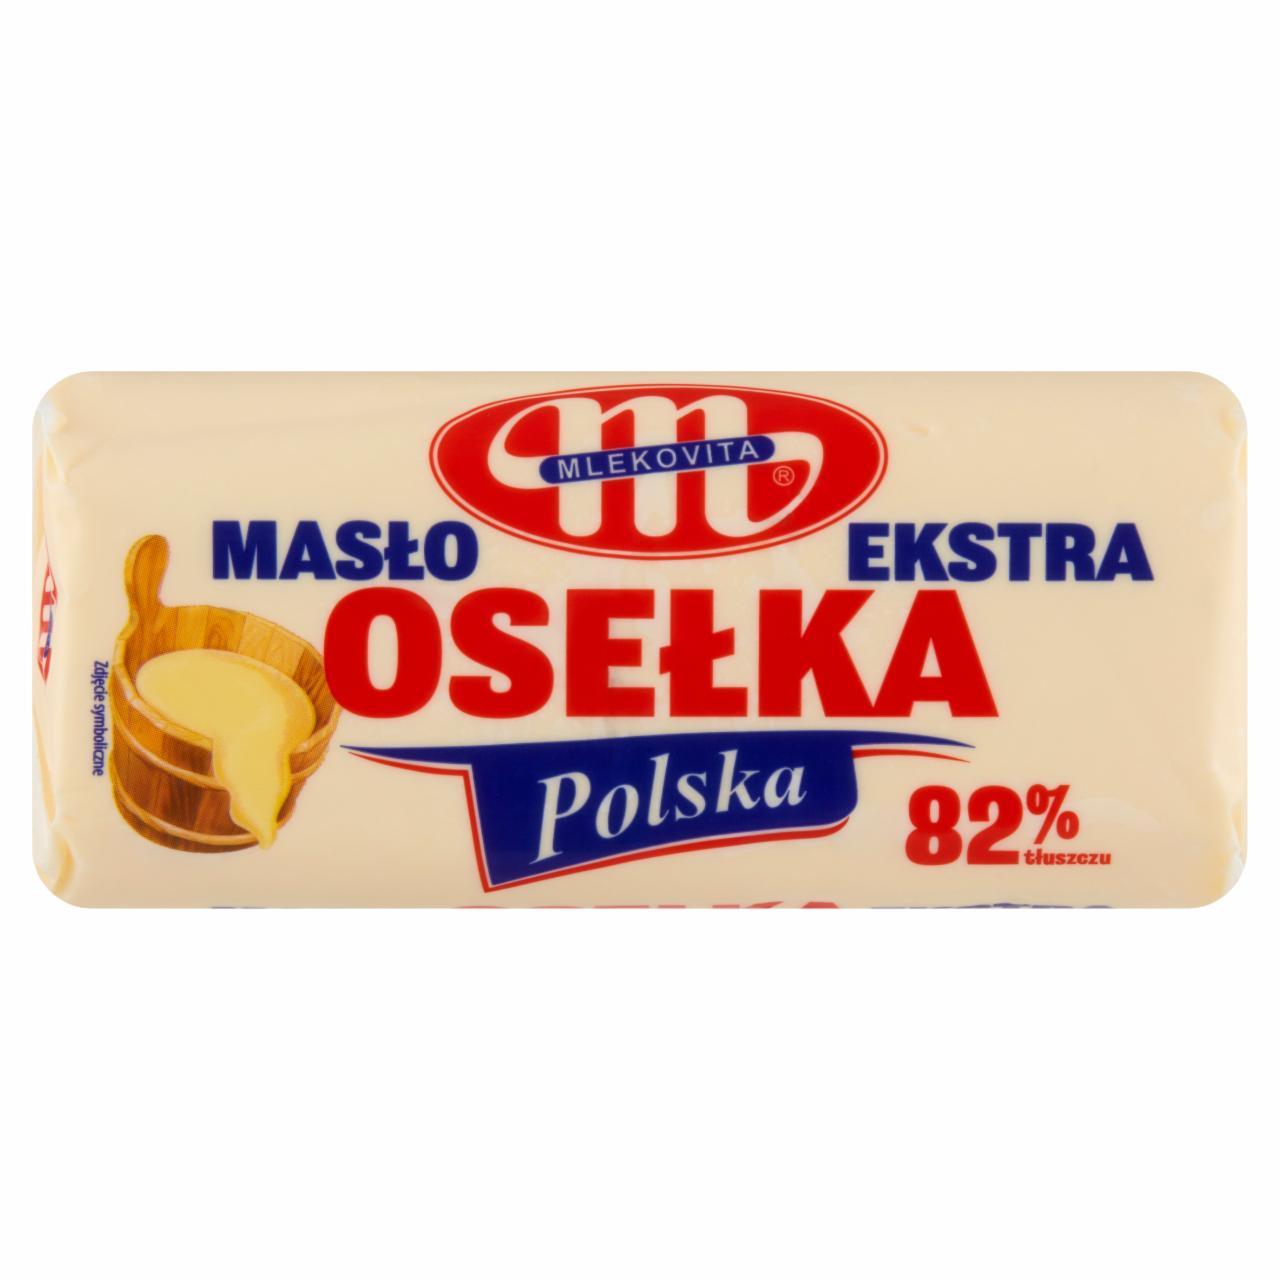 Zdjęcia - Mlekovita Masło ekstra osełka polska 500 g